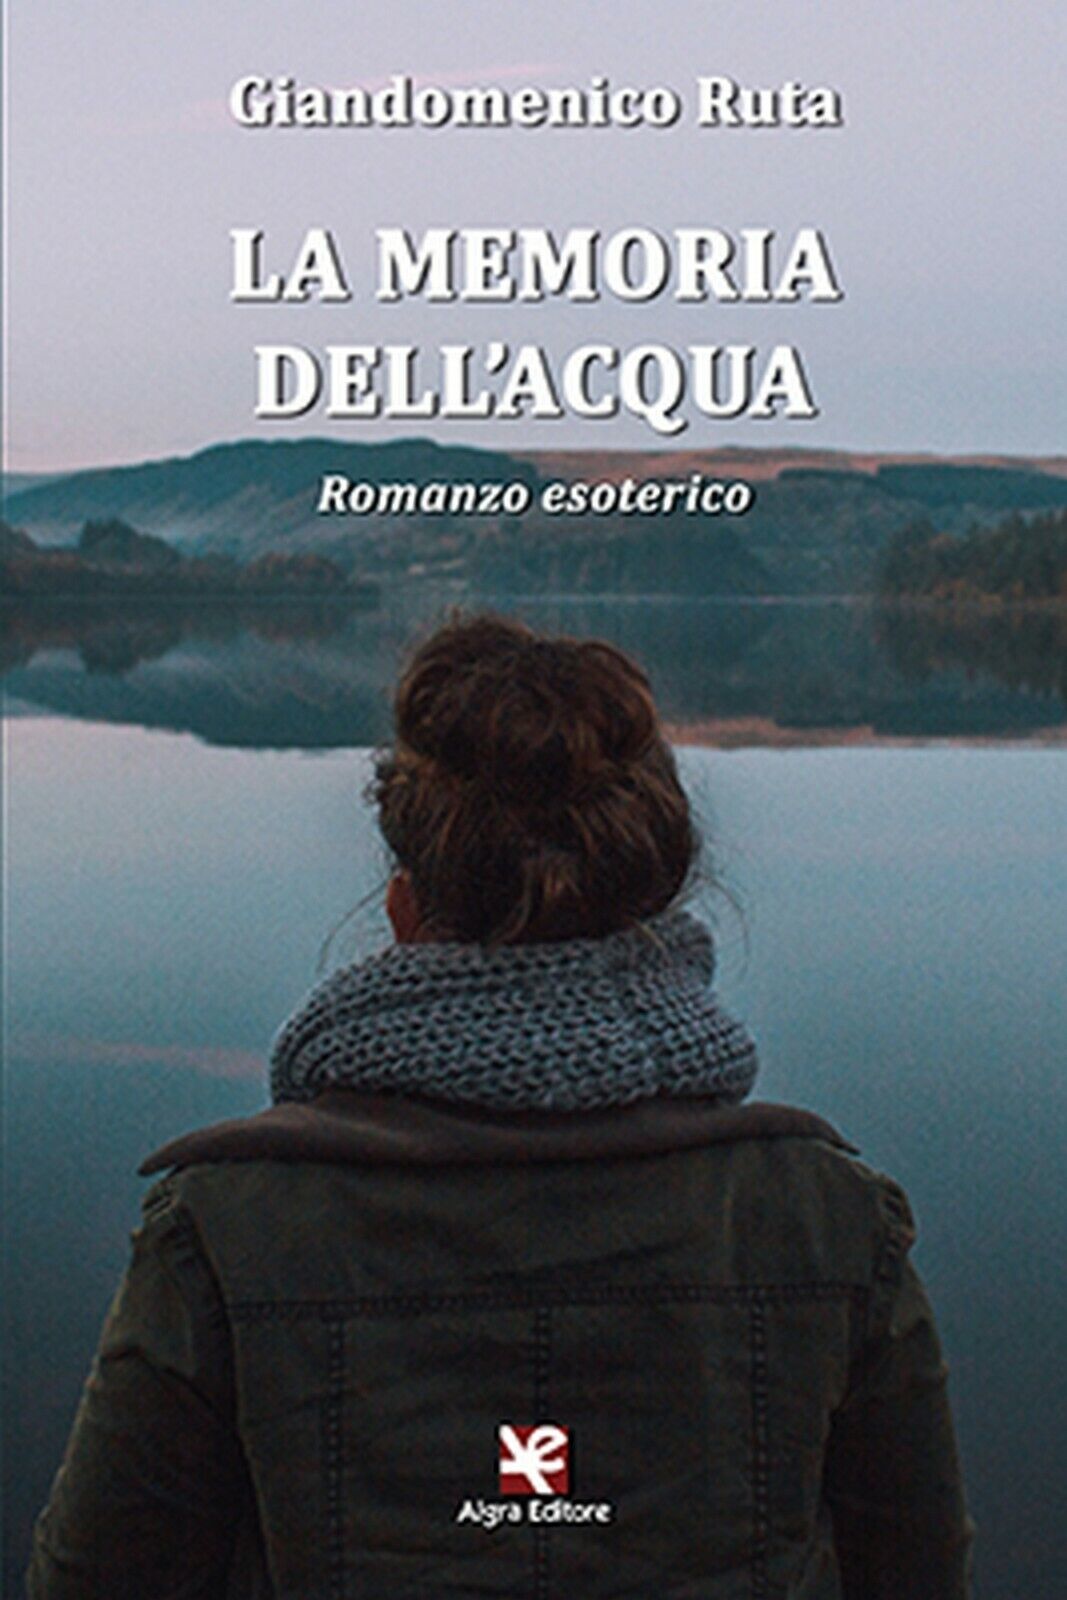 La memoria delL'acqua. Romanzo esoterico  di Giandomenico Ruta,  Algra Editore